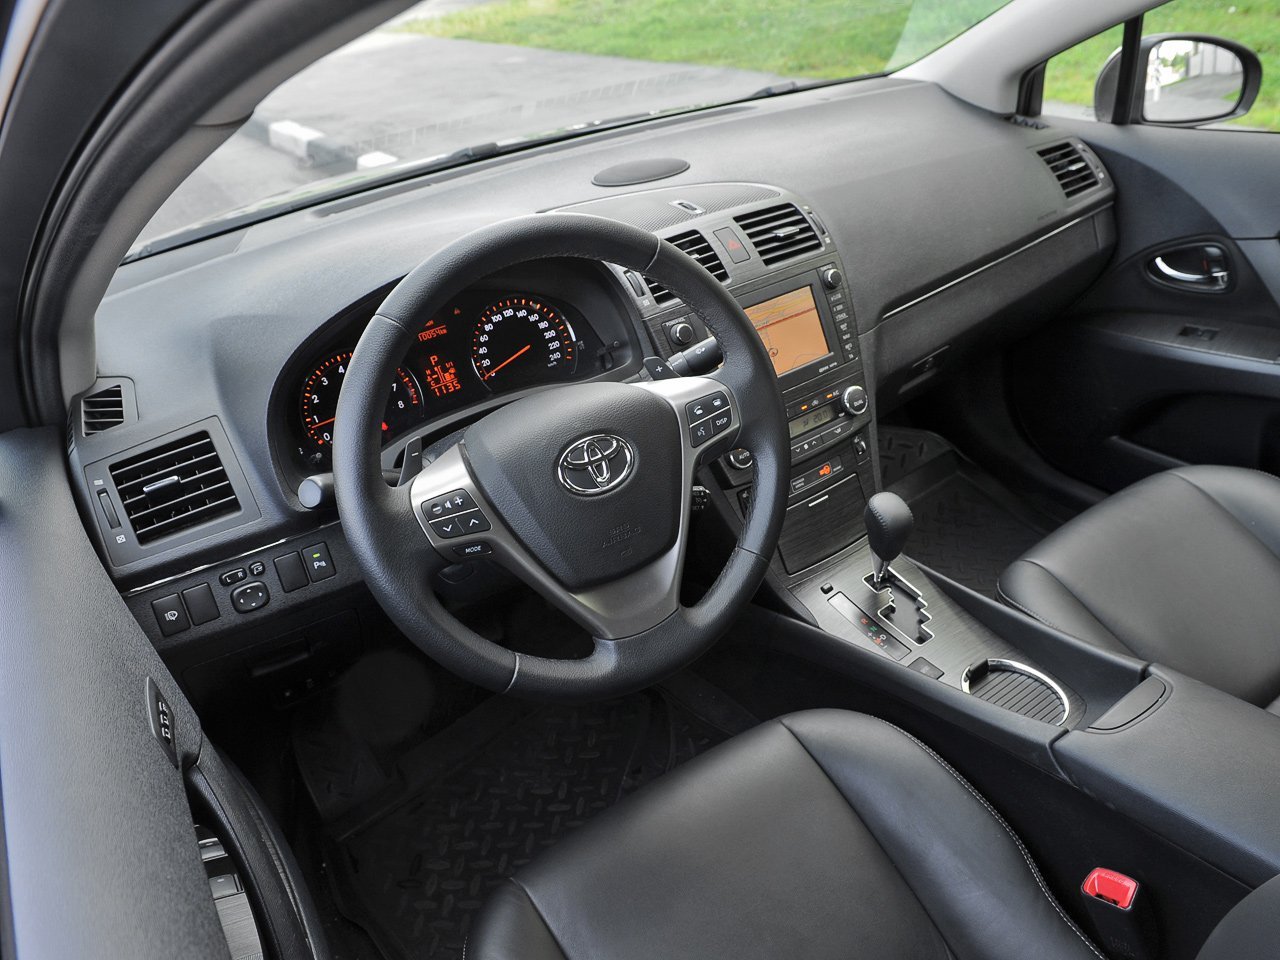 универсал Toyota Avensis 2009 - 2011г выпуска модификация 2.2 MT (177 л.с.)